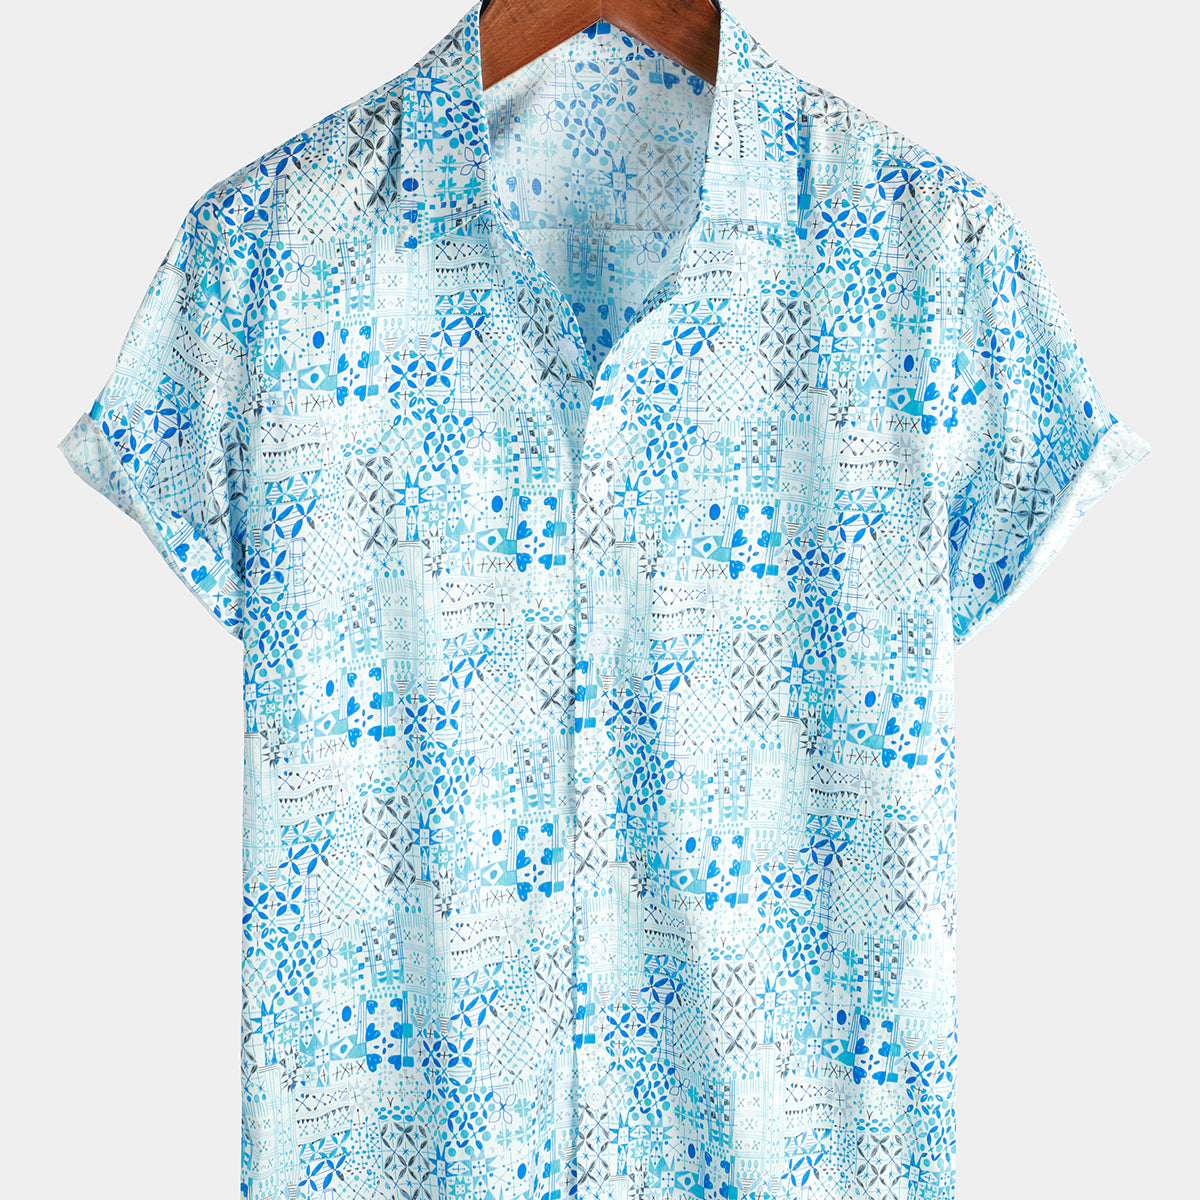 Men's Vintage Cotton Floral Print Blue Short Sleeve Shirt